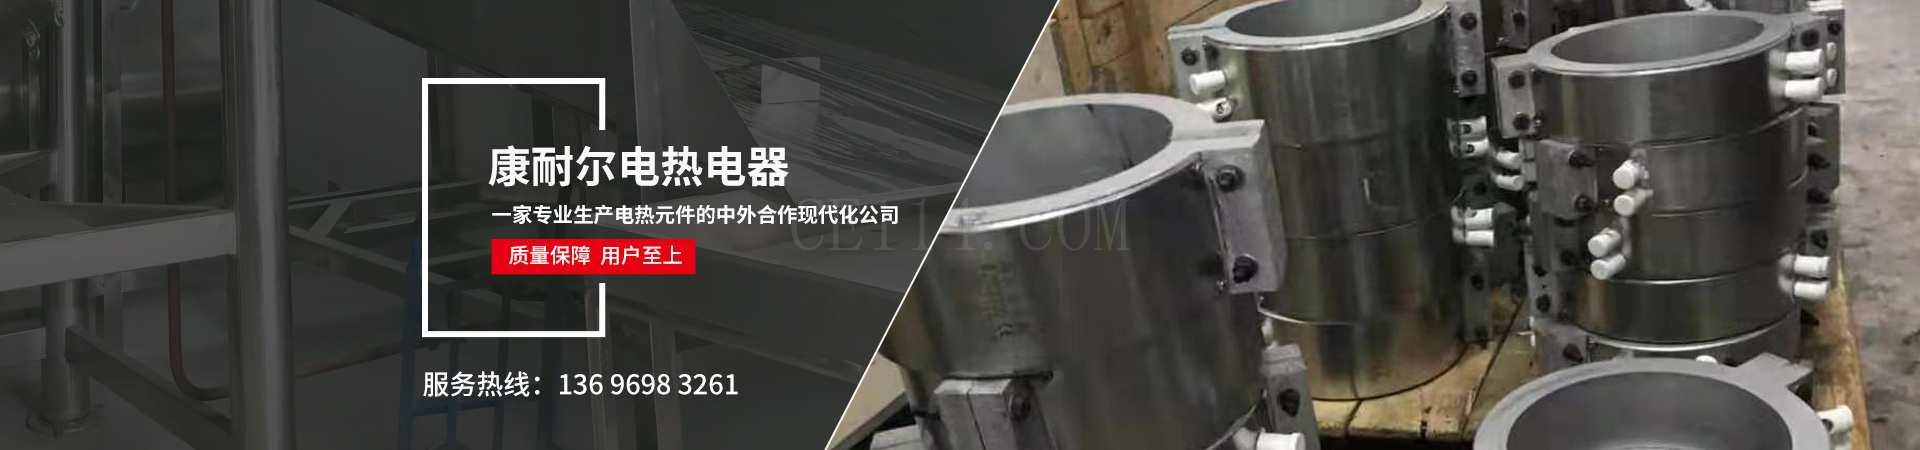 福建省康耐尔电热电器有限公司